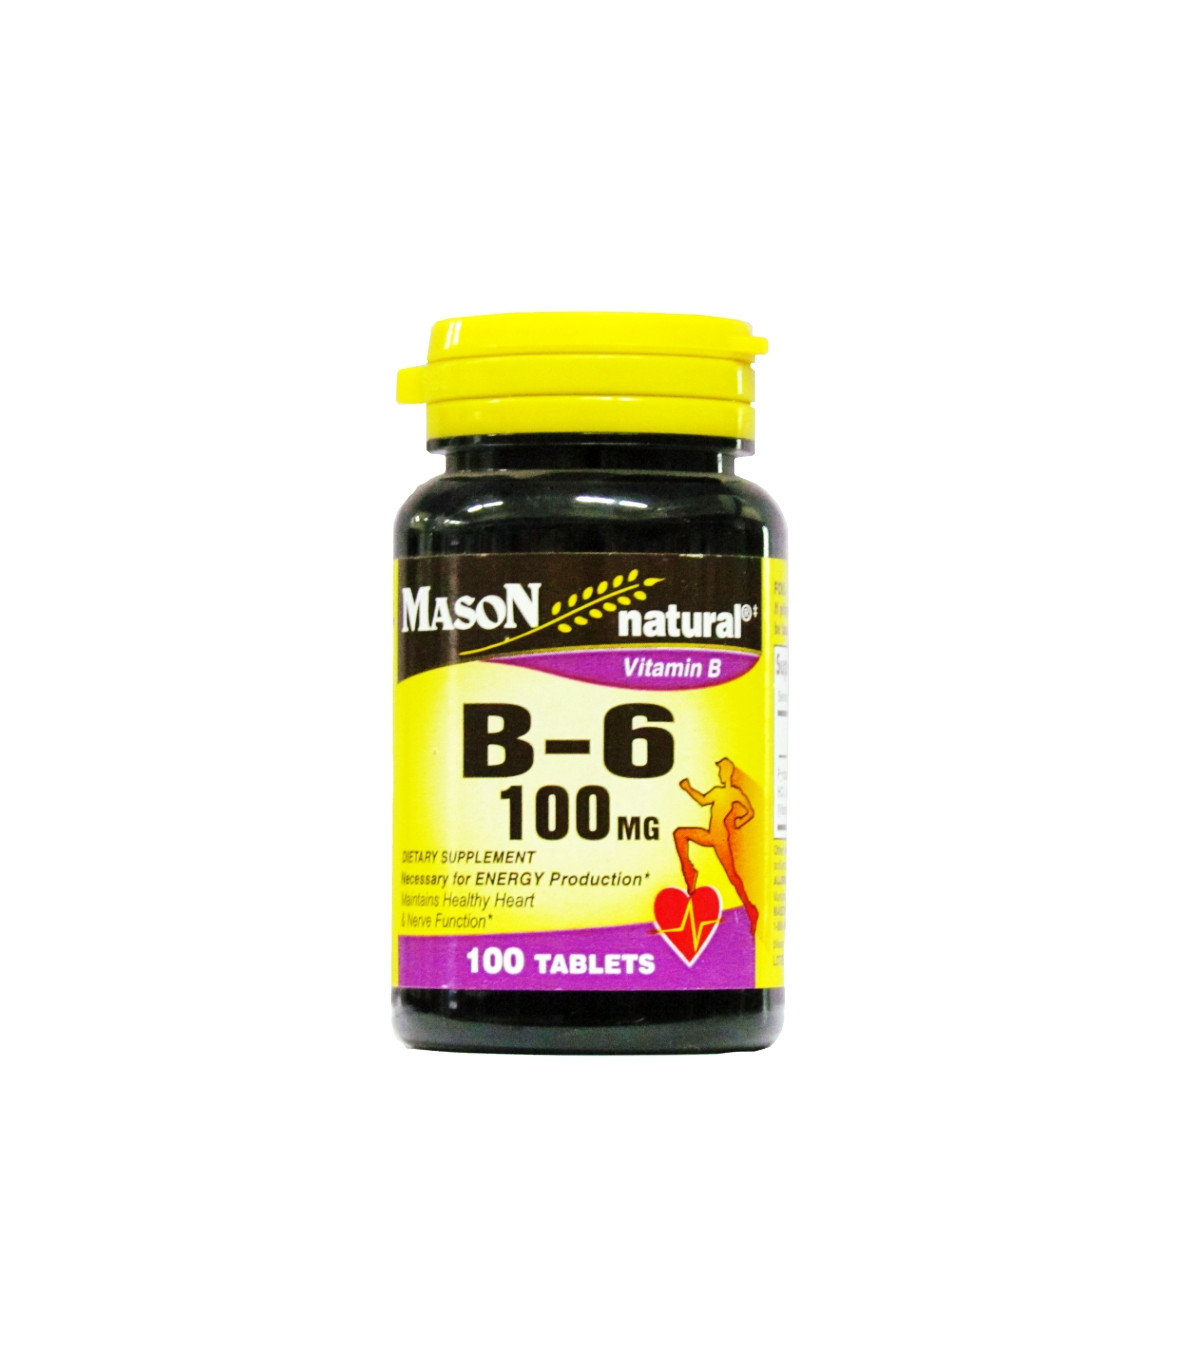 Mason Natural Vitamin B-6 100mg - 100 Tablets